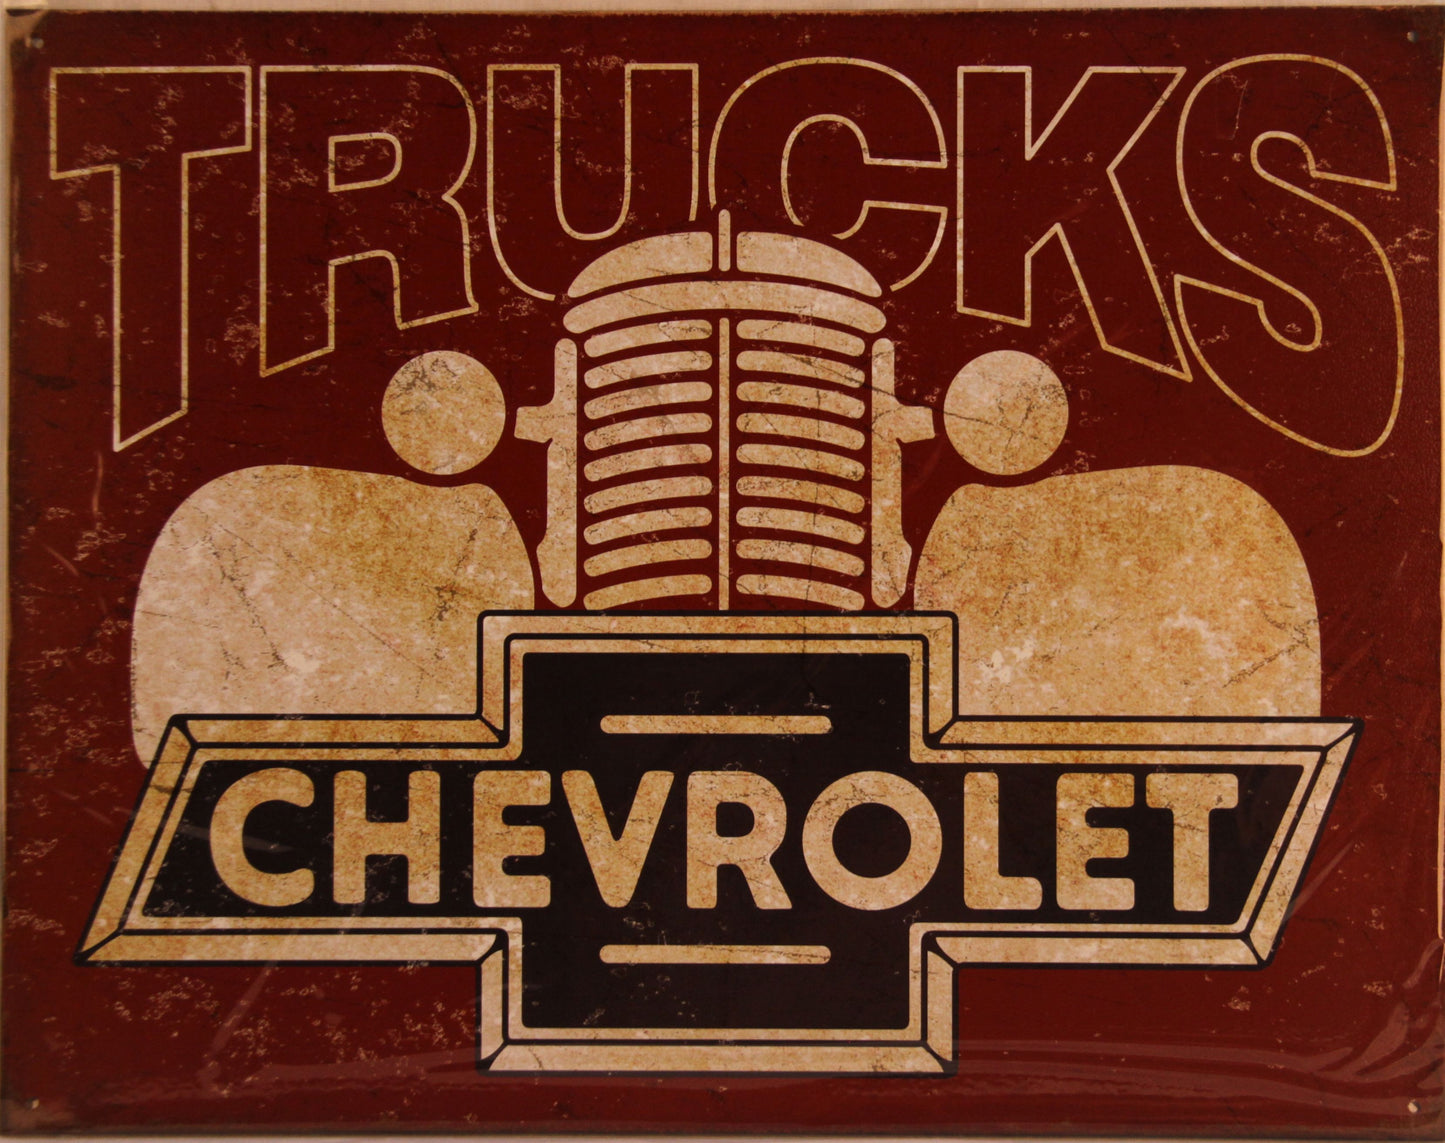 Blechschild "Chevrolet Trucks"